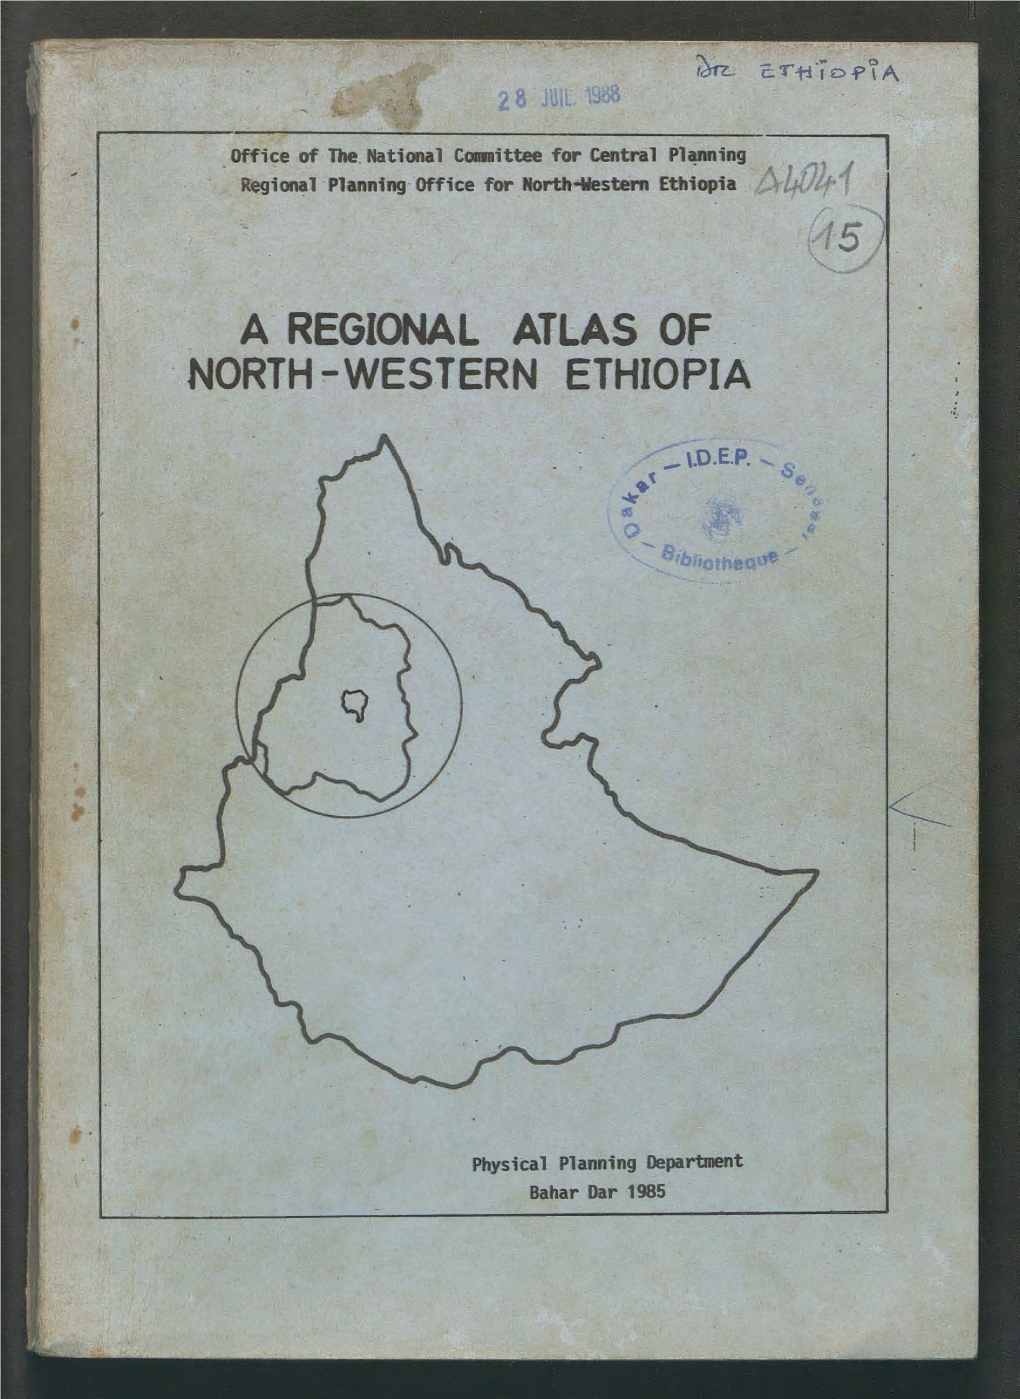 A Regional Atlas of North-Western Ethiopia